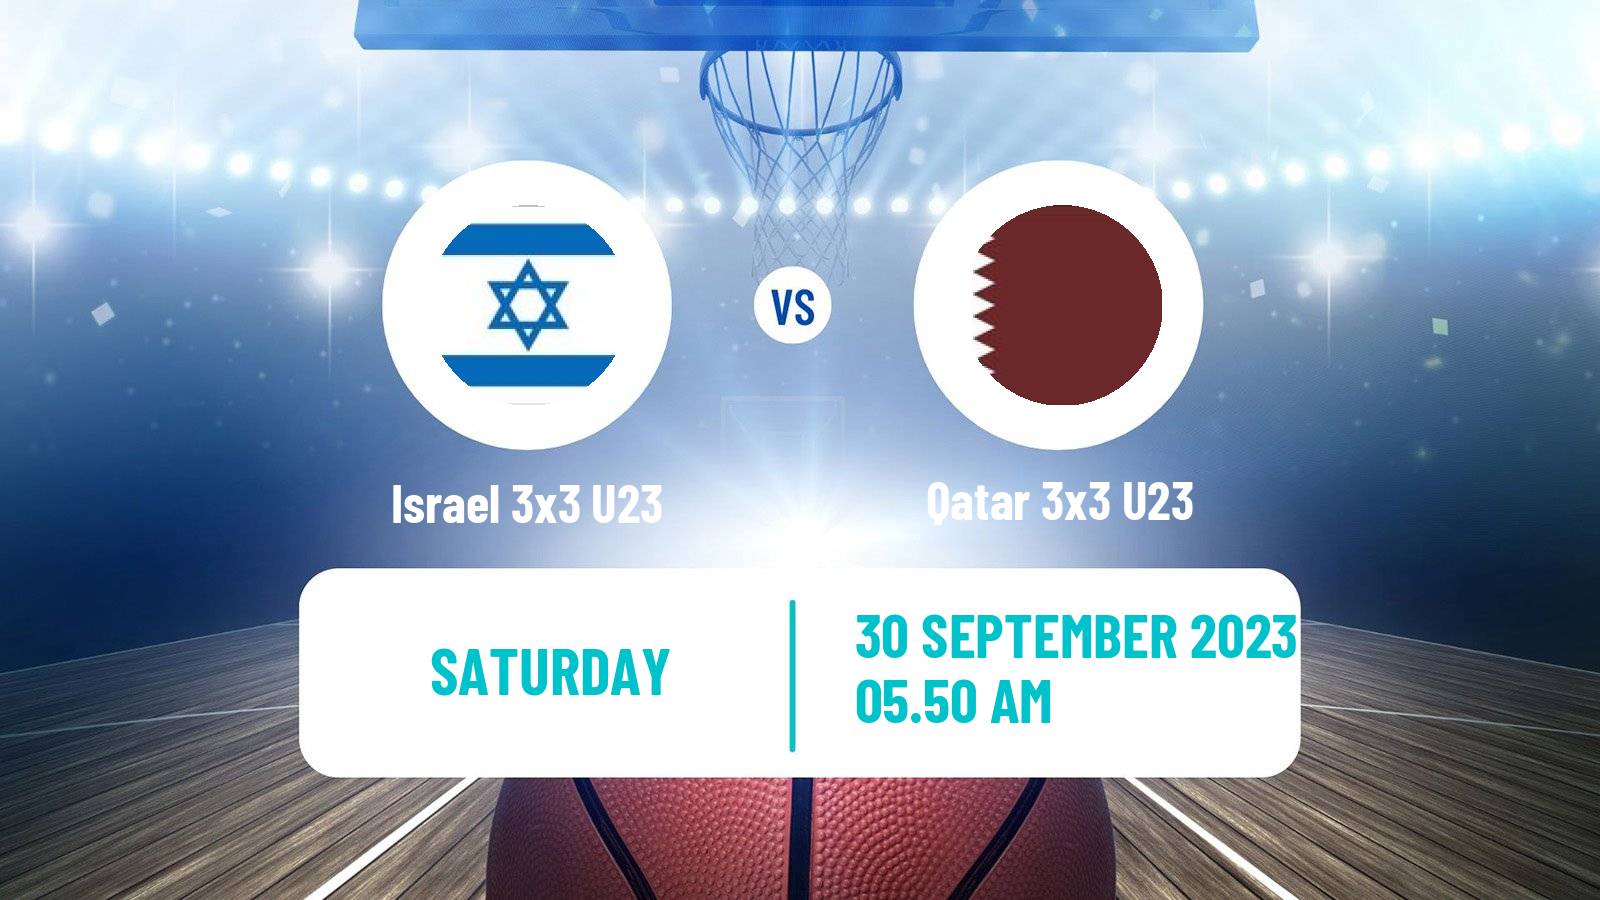 Basketball World Cup Basketball 3x3 U23 Israel 3x3 U23 - Qatar 3x3 U23